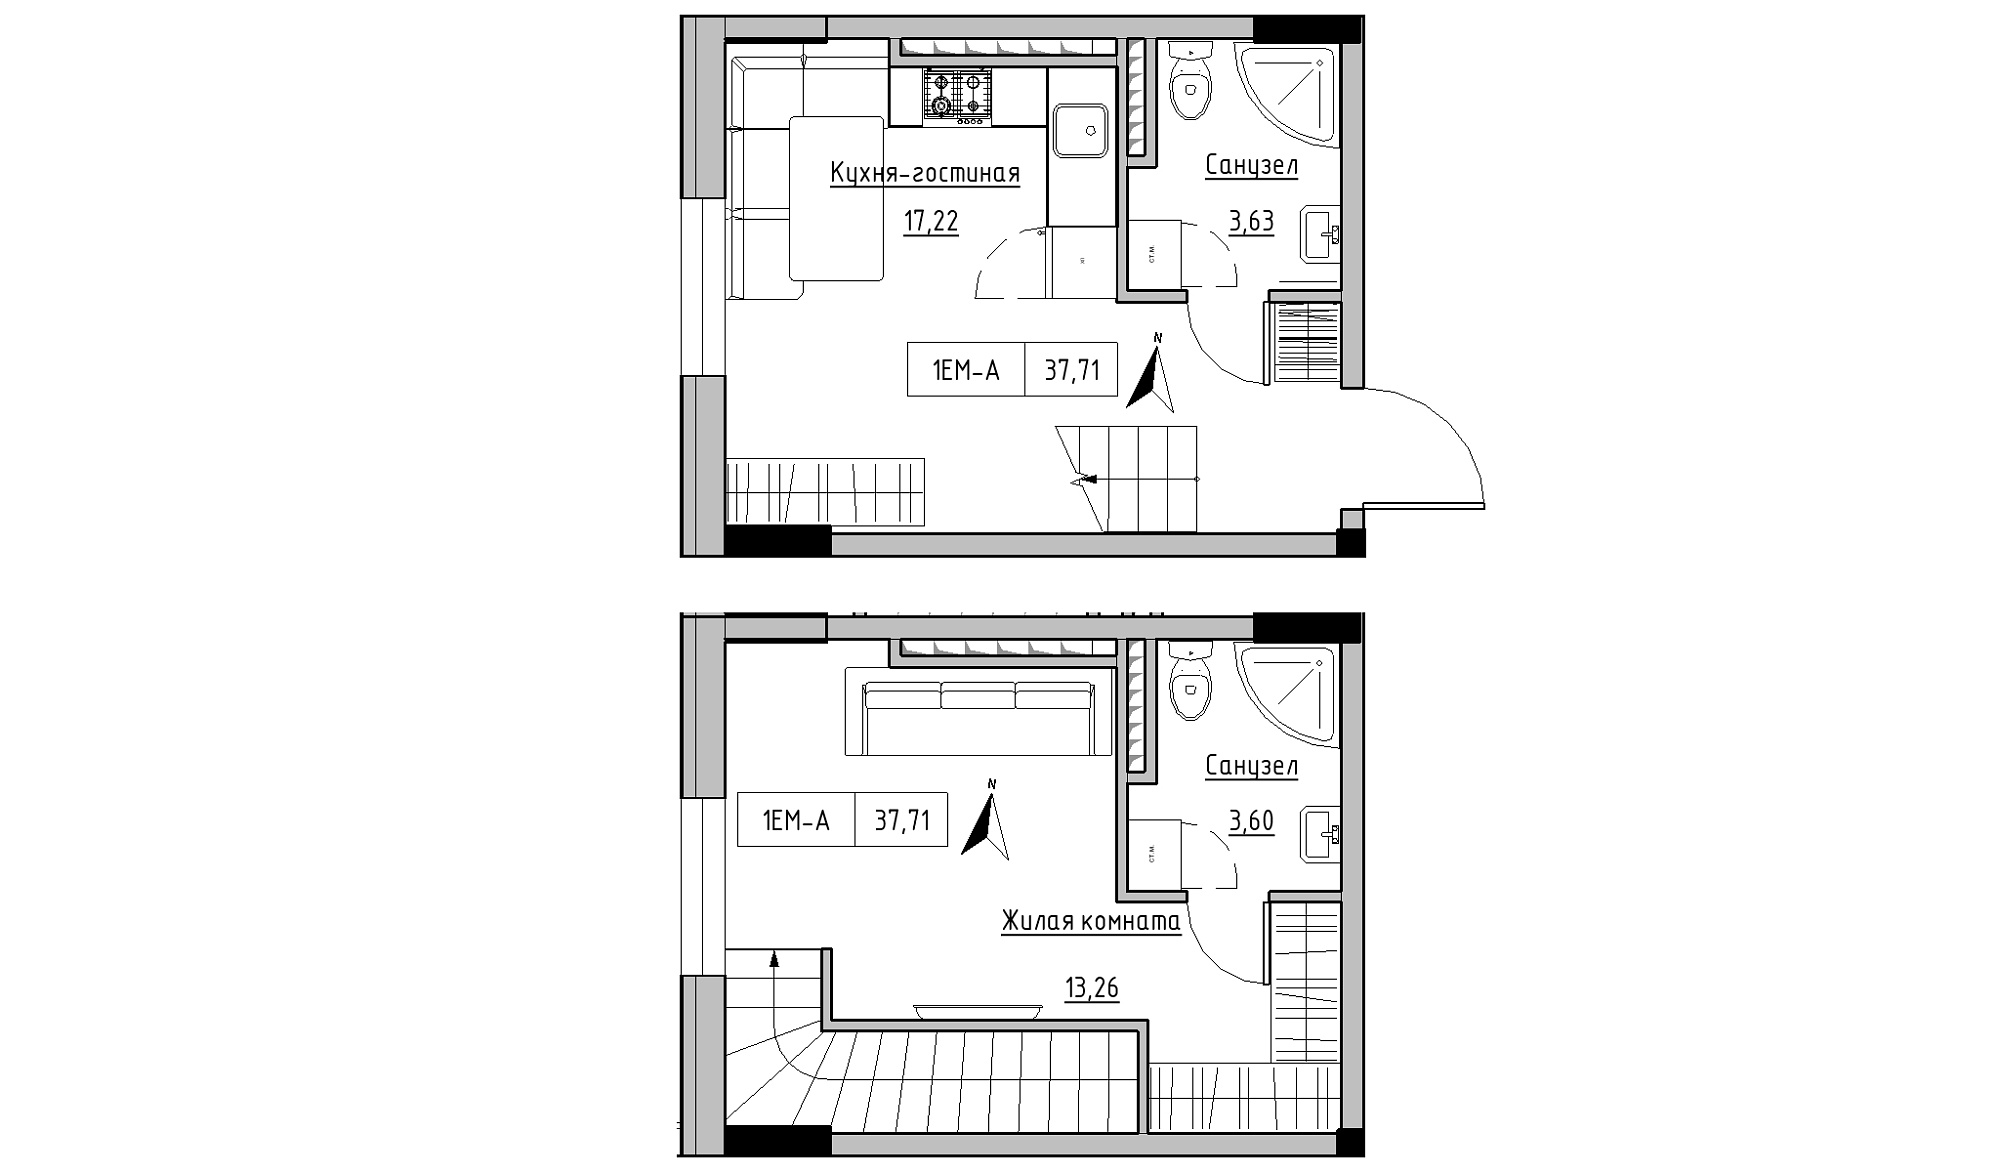 Planning 2-lvl flats area 37.71m2, KS-025-05/0004.